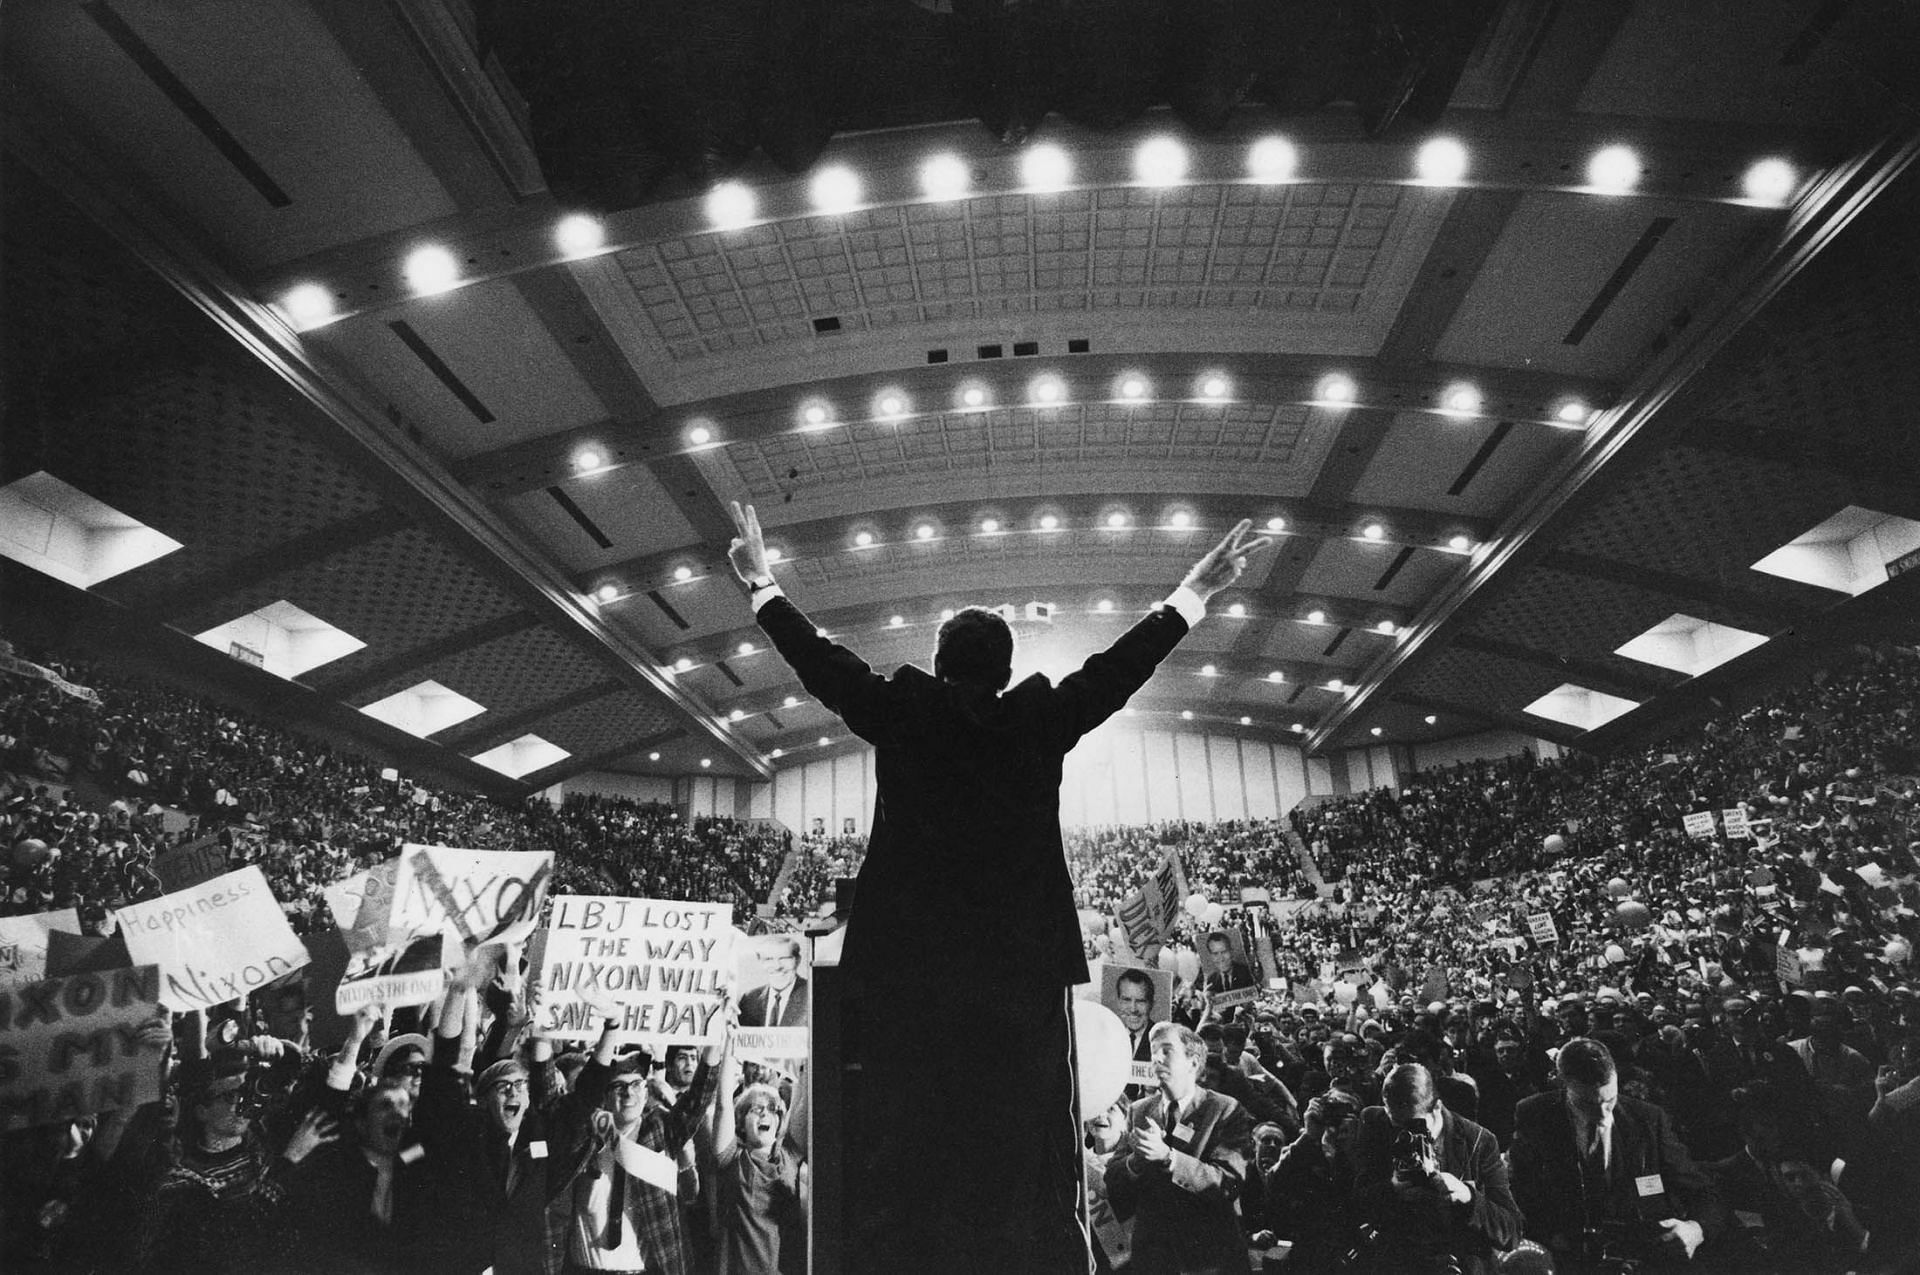 Richard Nixon in his election campaign (Image via Getty)